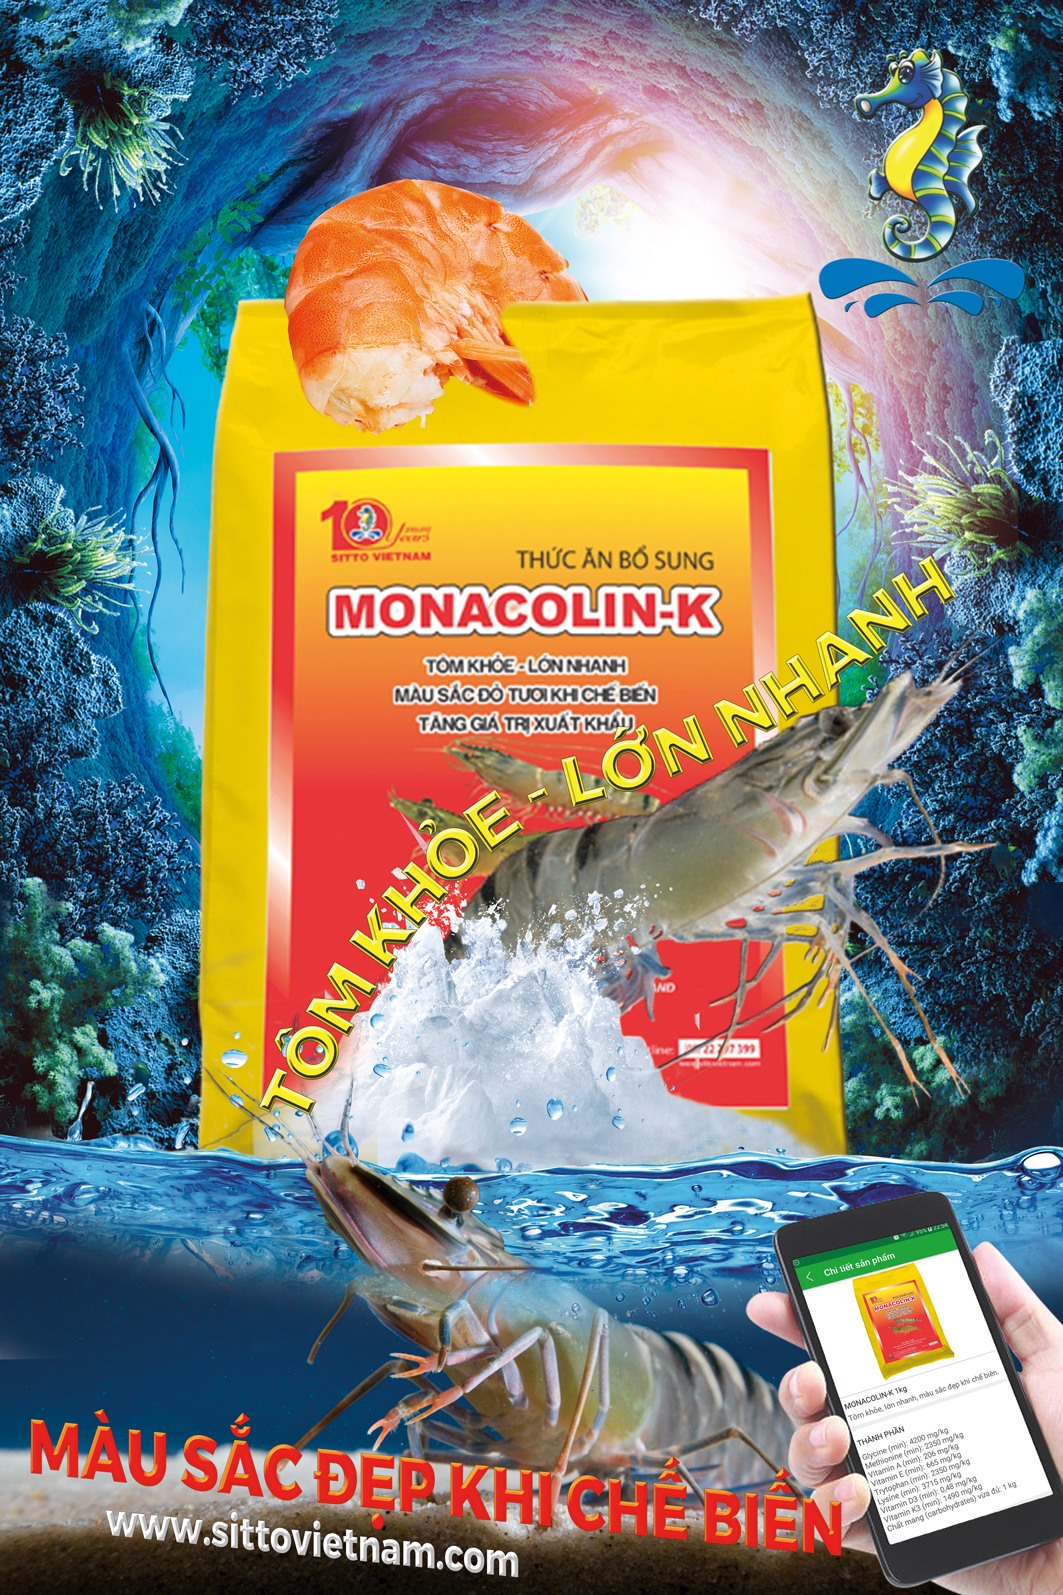 Dinh dưỡng bổ sung - Monacolin-K (Gói 1kg) - Bổ sung vitamin và các acid amin giúp tôm khỏe, lớn nhanh